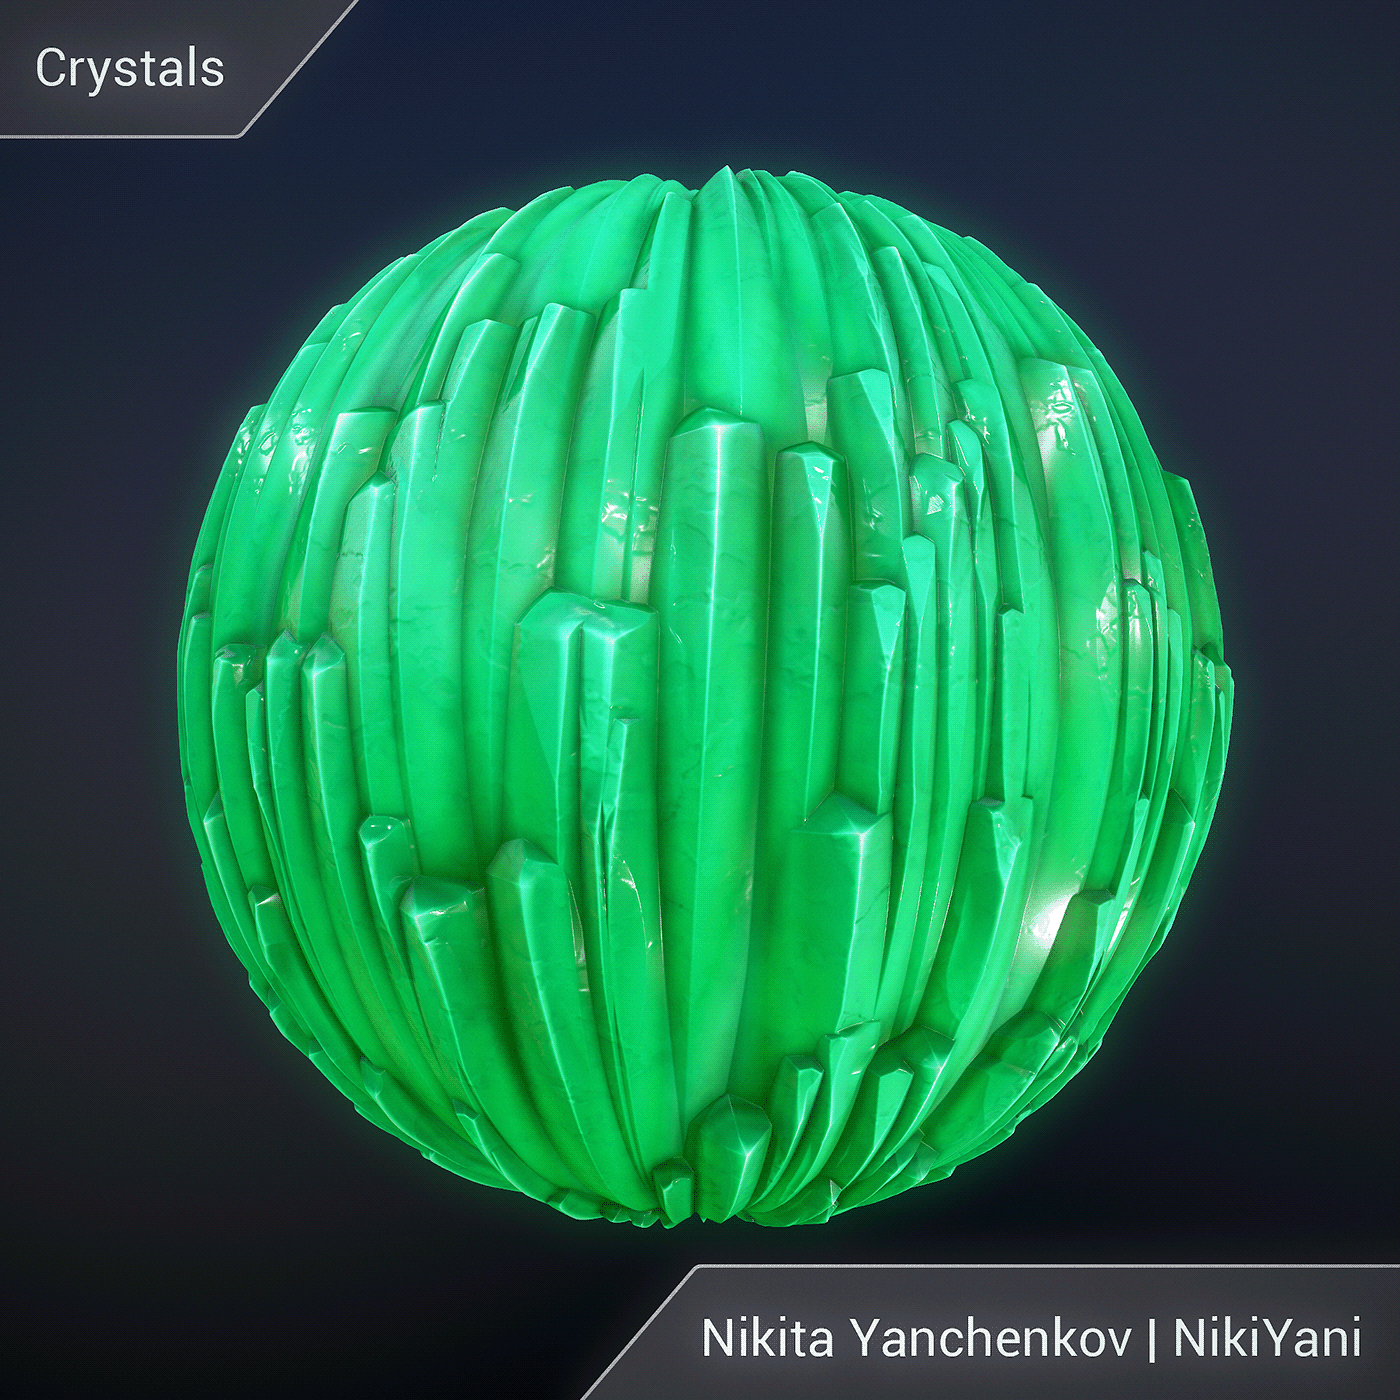 3D CG crystals Game Art material nikiyani substance designer  texture